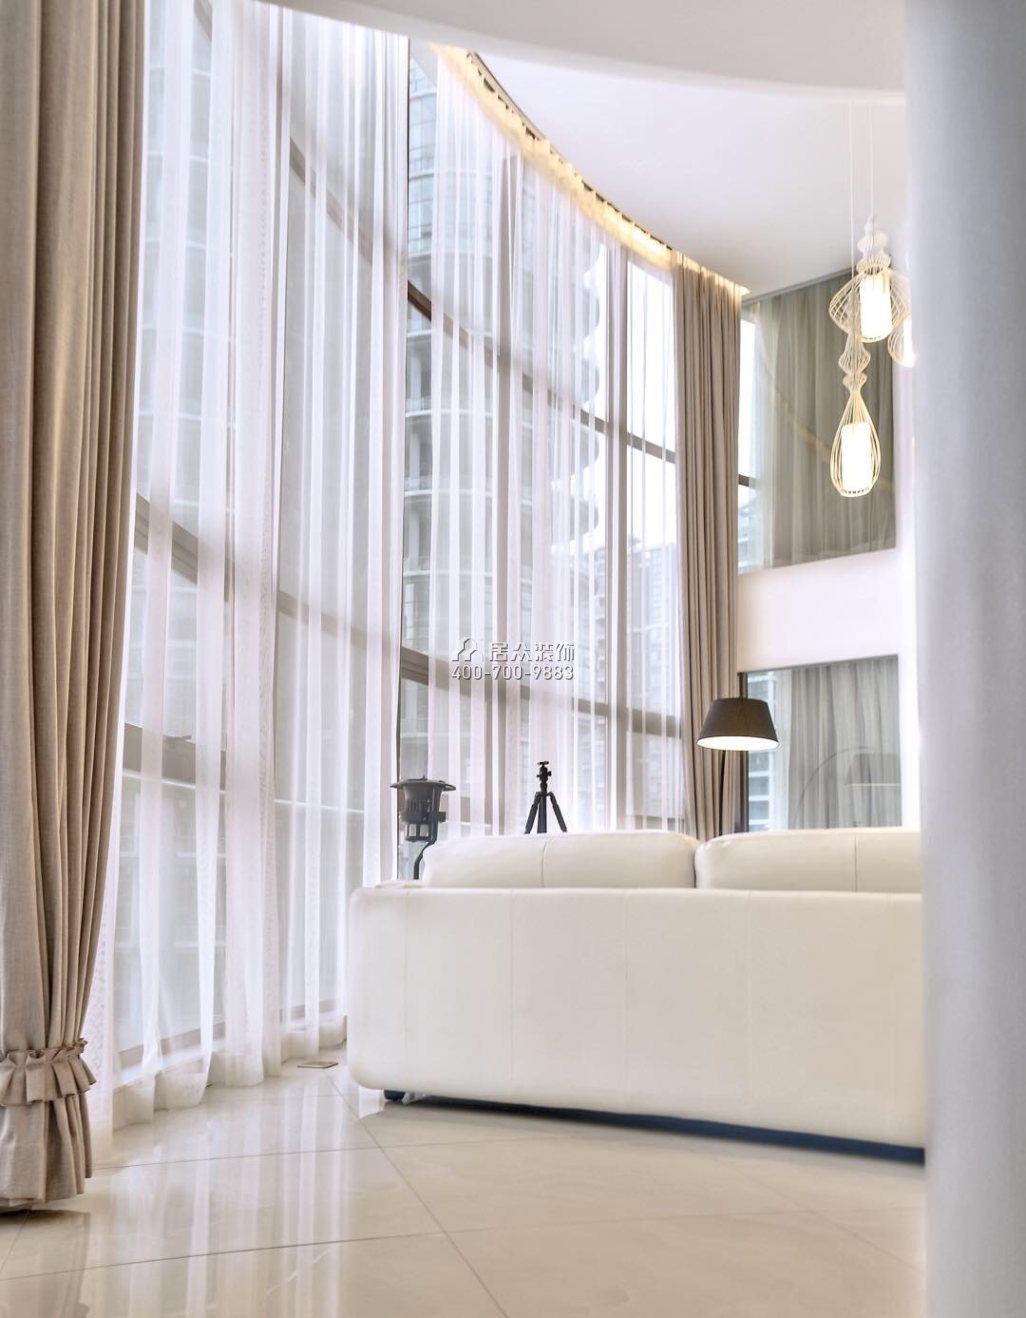 富湾国际320平方米现代简约风格复式户型客厅装修效果图